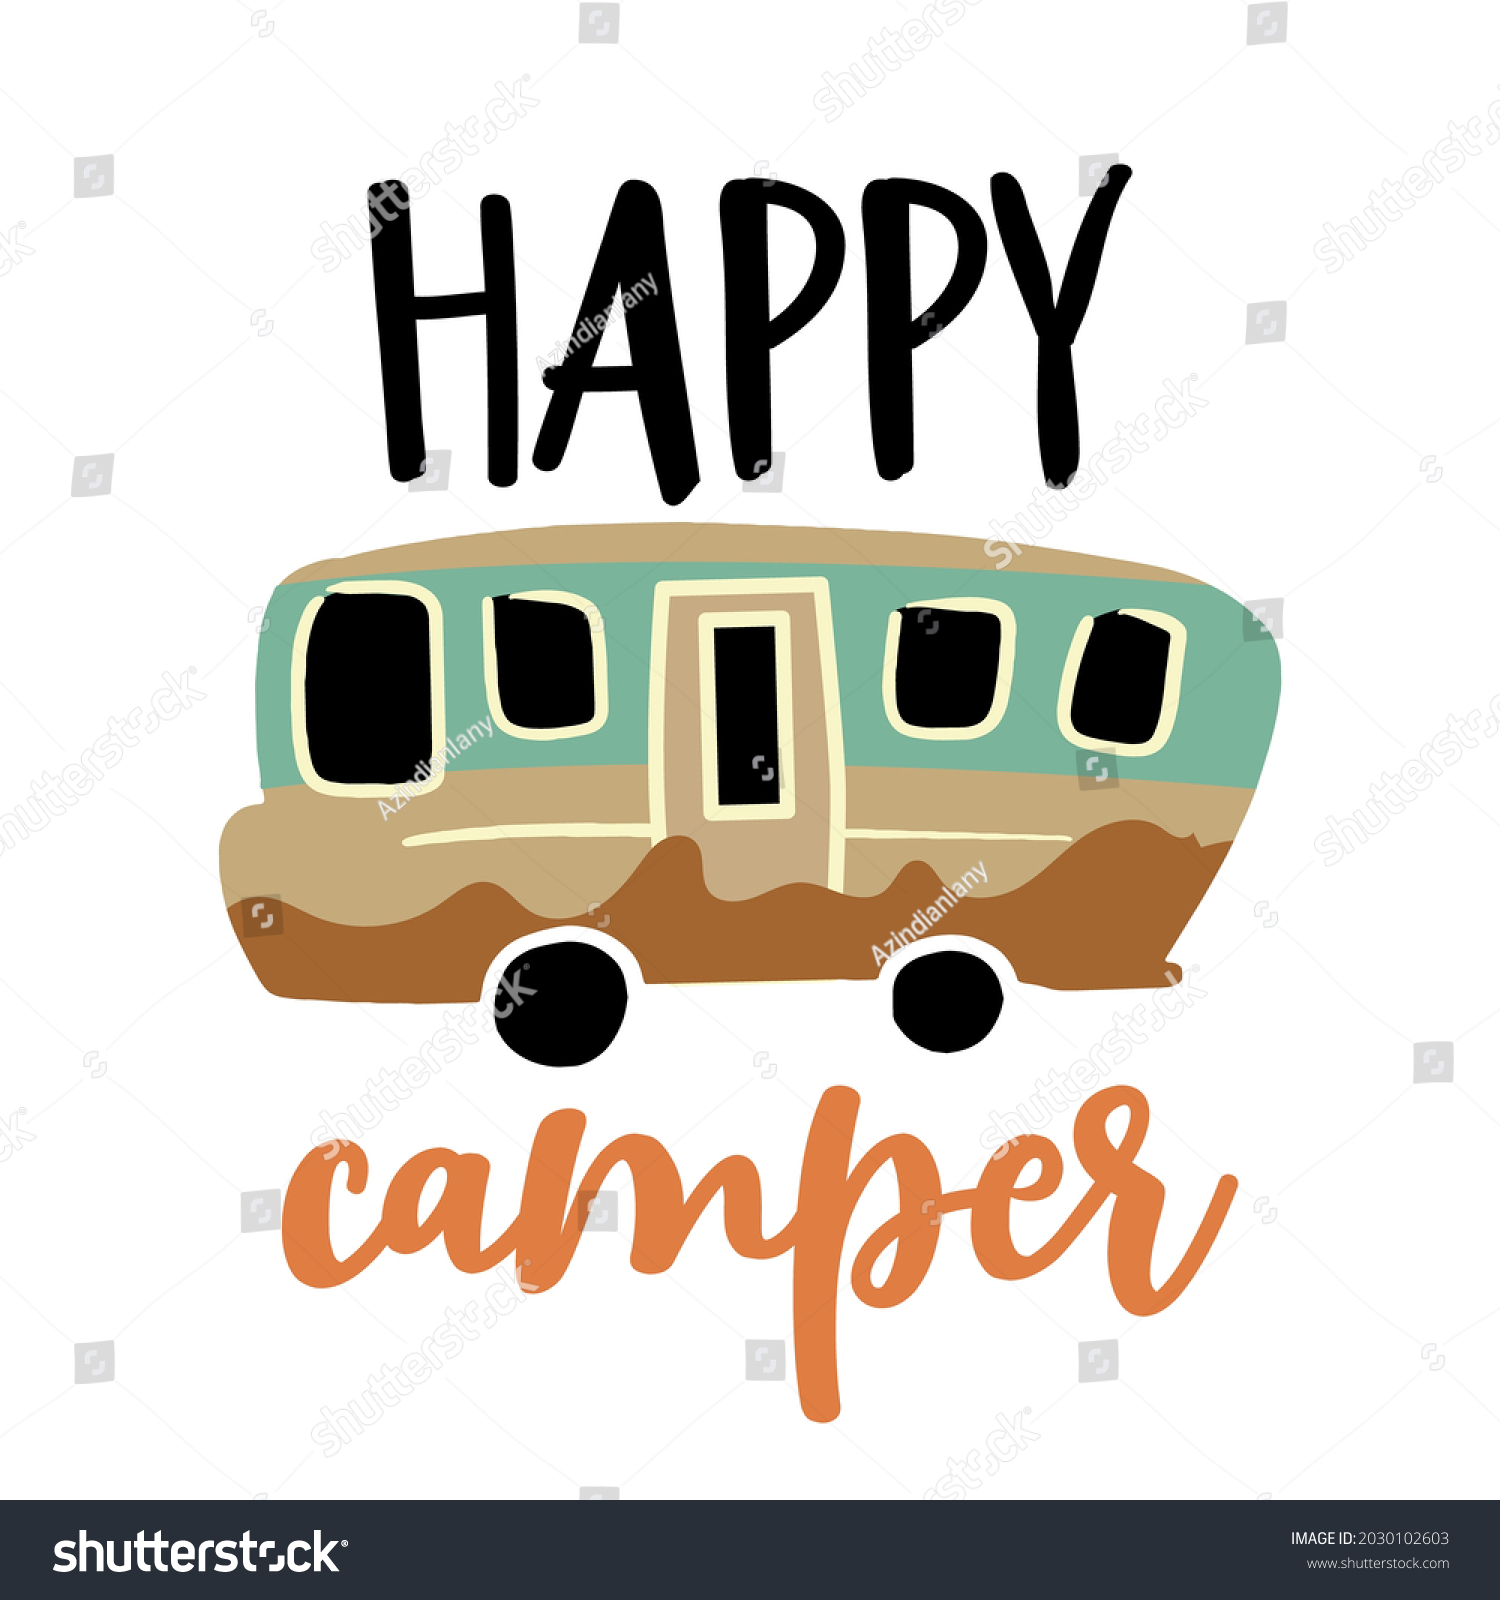 SVG of Happy Camper - Cute colorful design element for t-shirt print, mug, posters. Vector vintage lettering illustration. Happy Camper trailer in sketch doodle style. svg